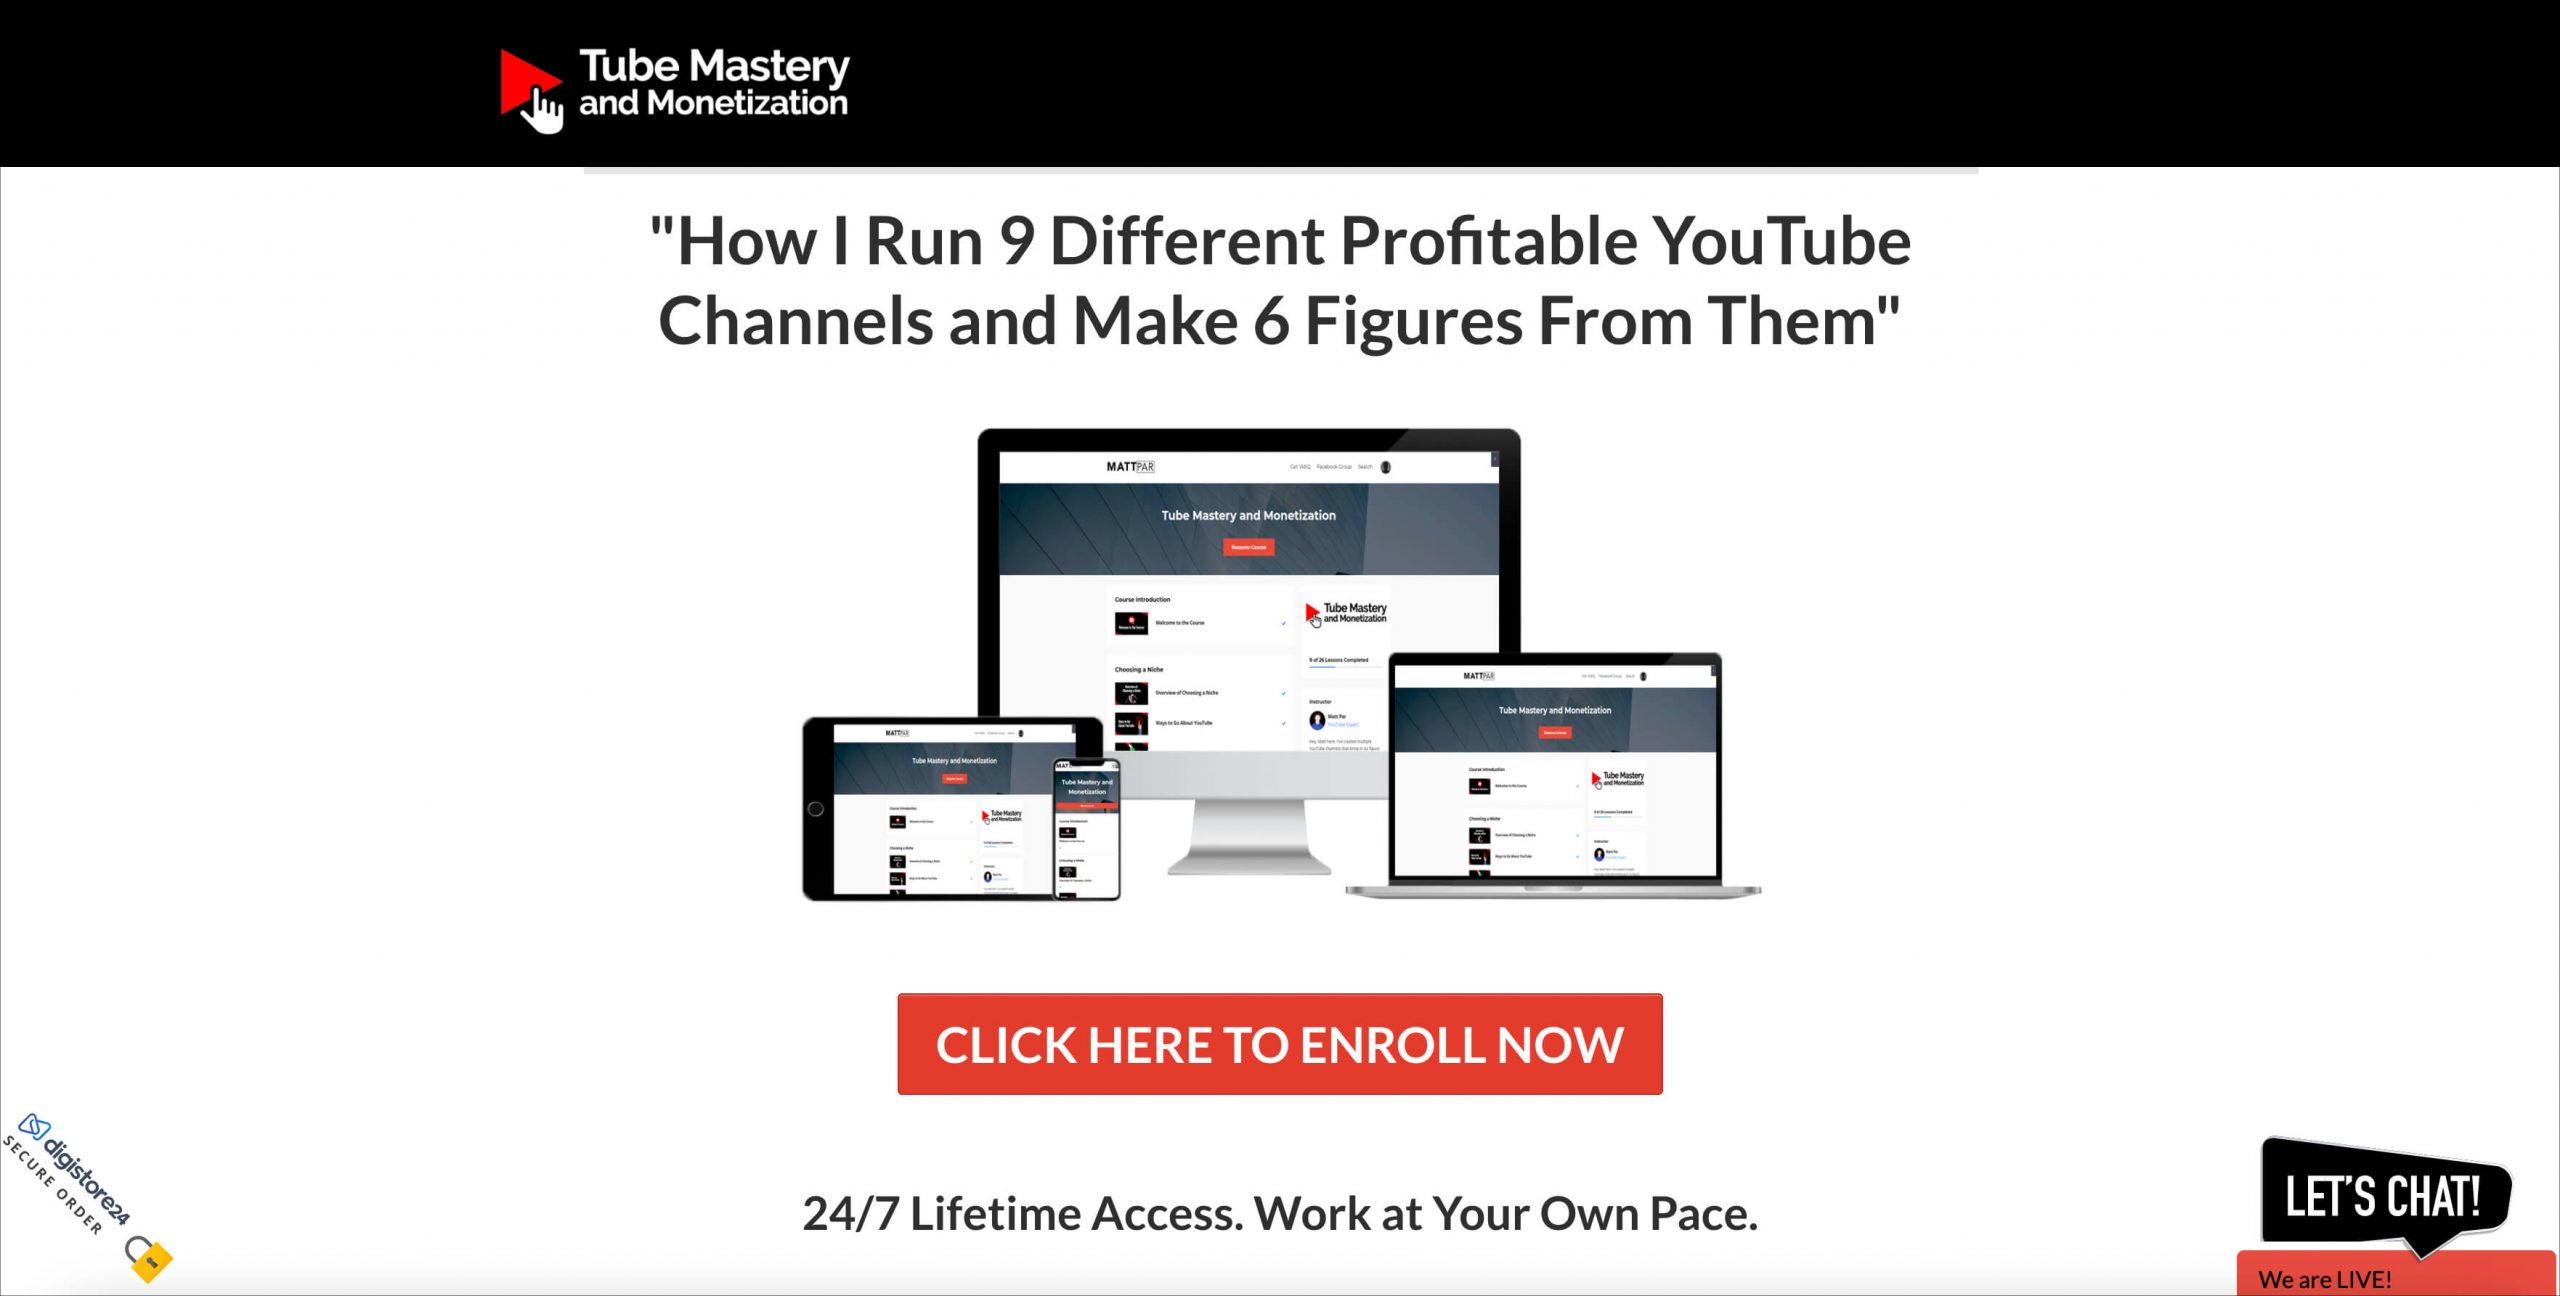 tube-mastery-monetization-course